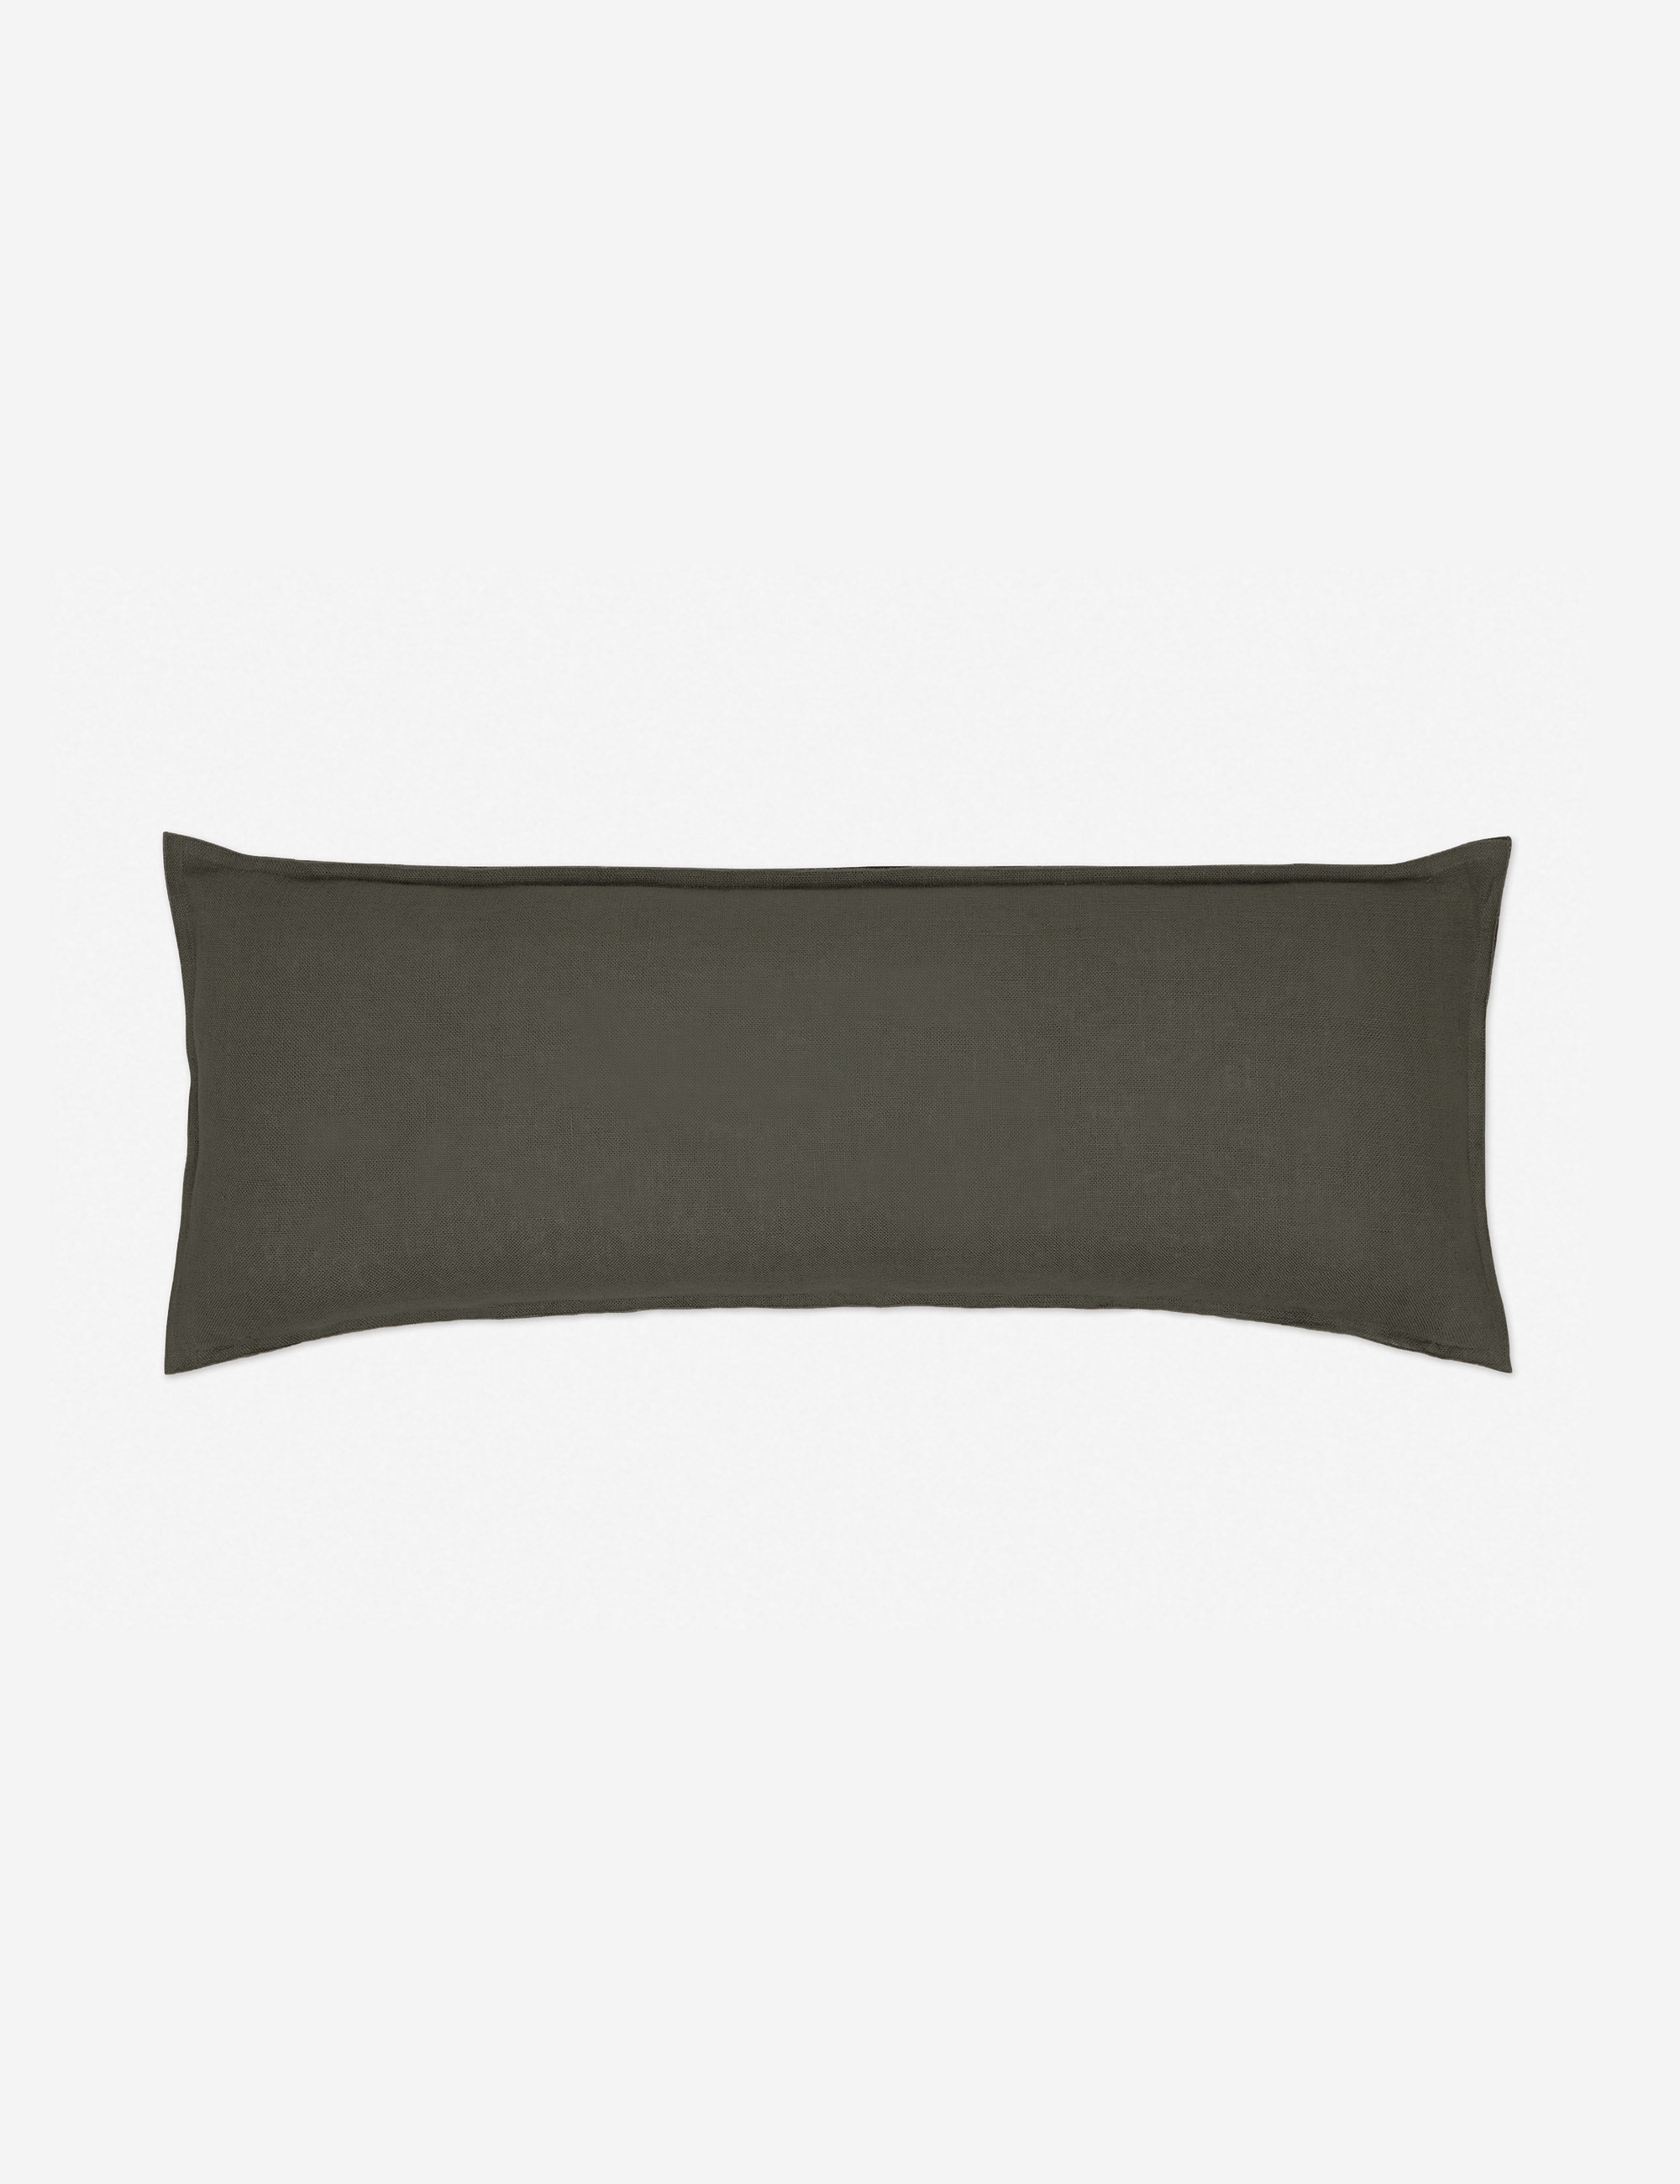 Arlo Linen Long Lumbar Pillow, Conifer - Image 2